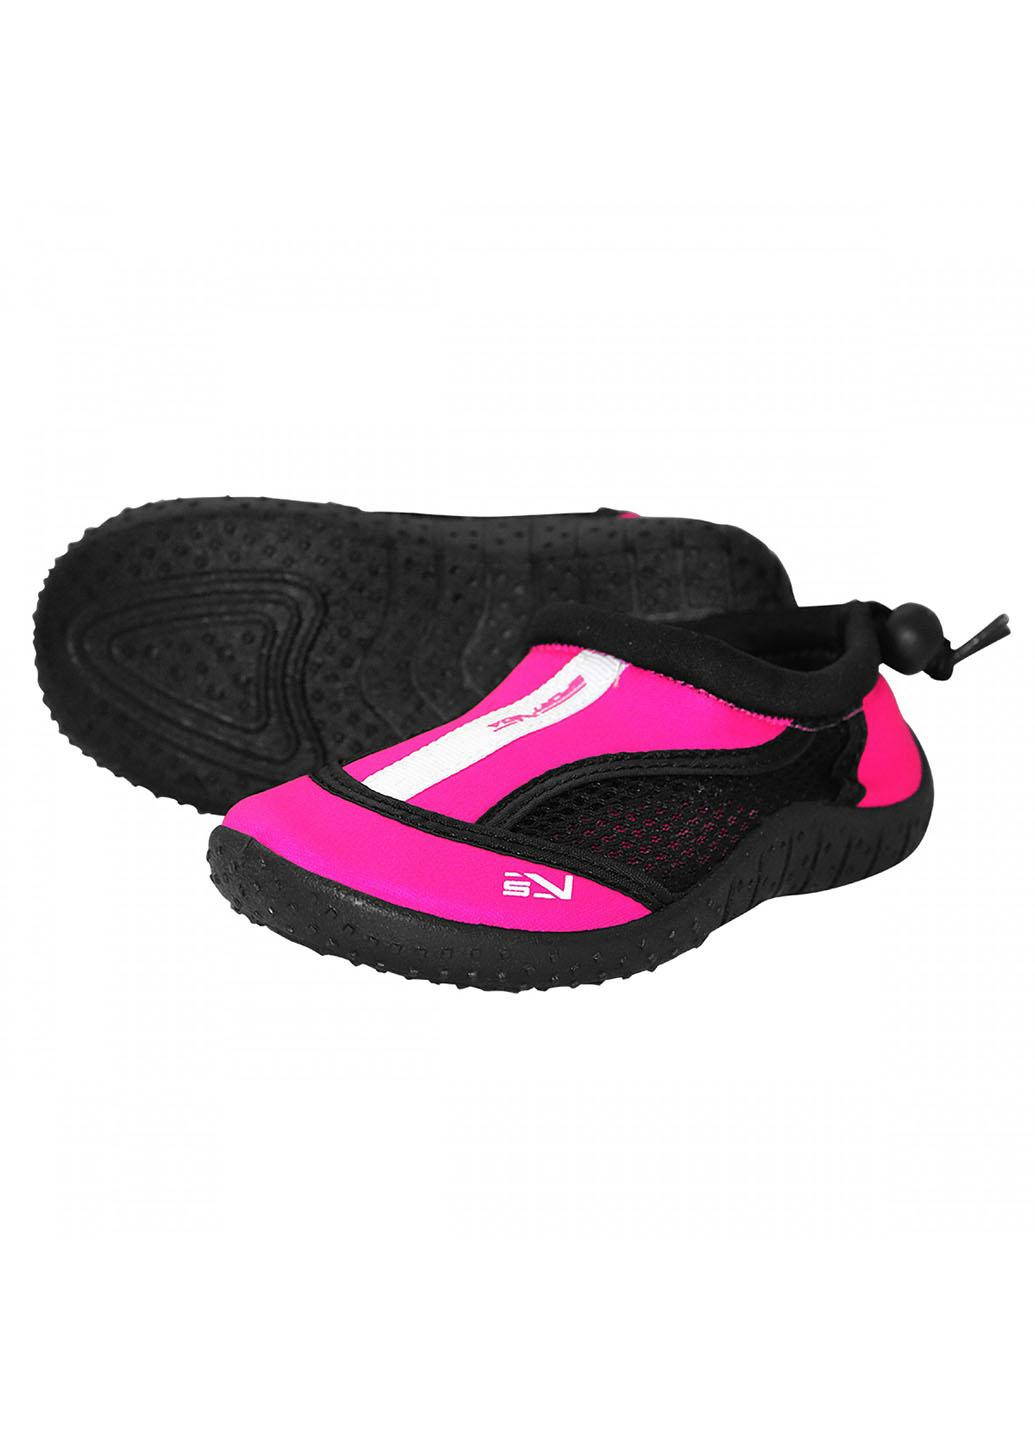 Обувь для пляжа и кораллов (аквашуз) SV-GY0001-R29 Size 29 Black/Pink SportVida (258486783)